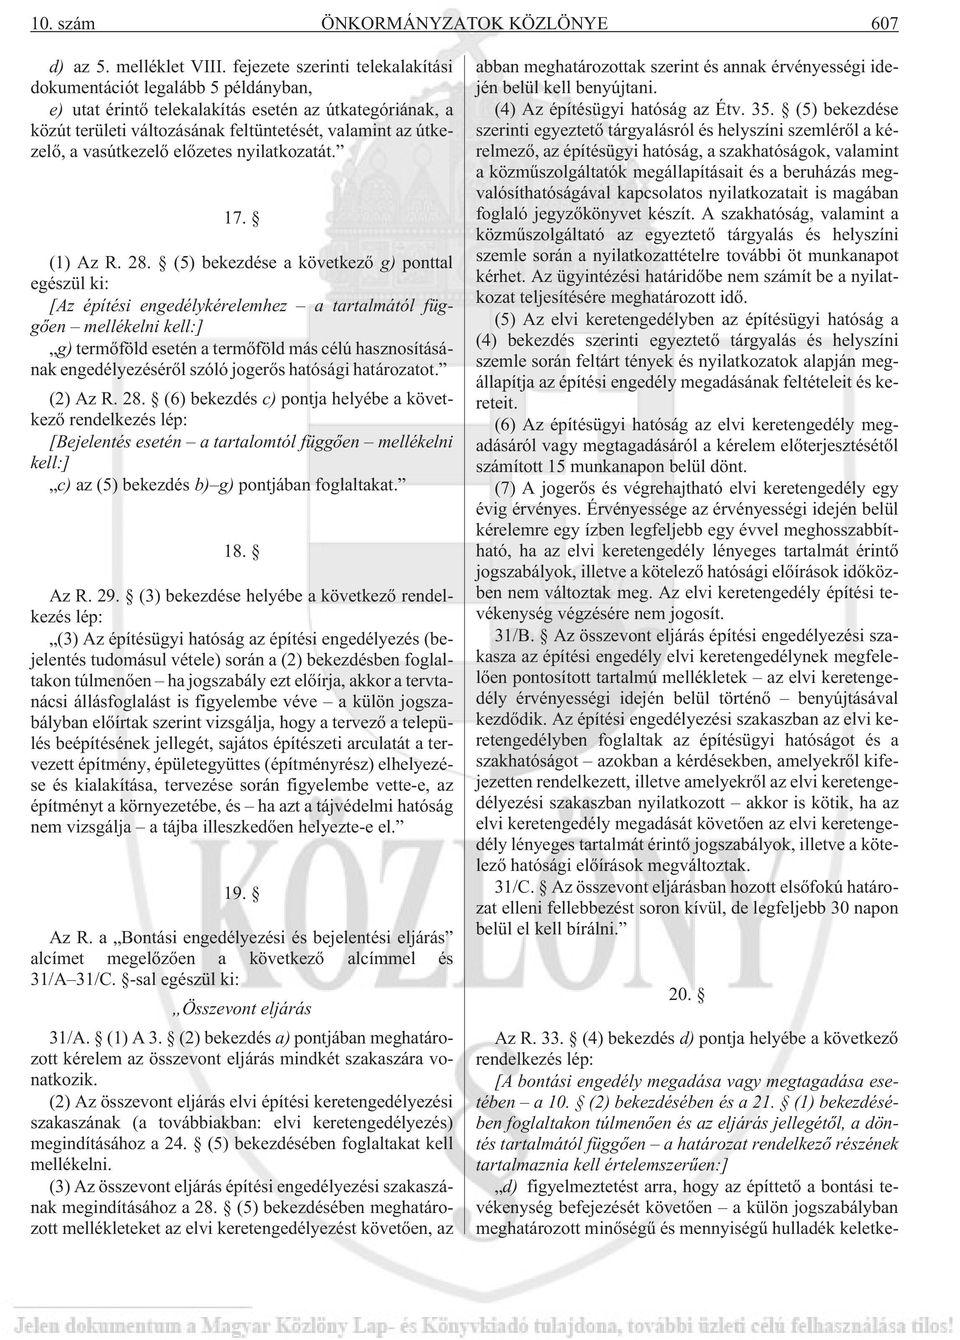 vasútkezelõ elõzetes nyilatkozatát. 17. (1) Az R. 28.